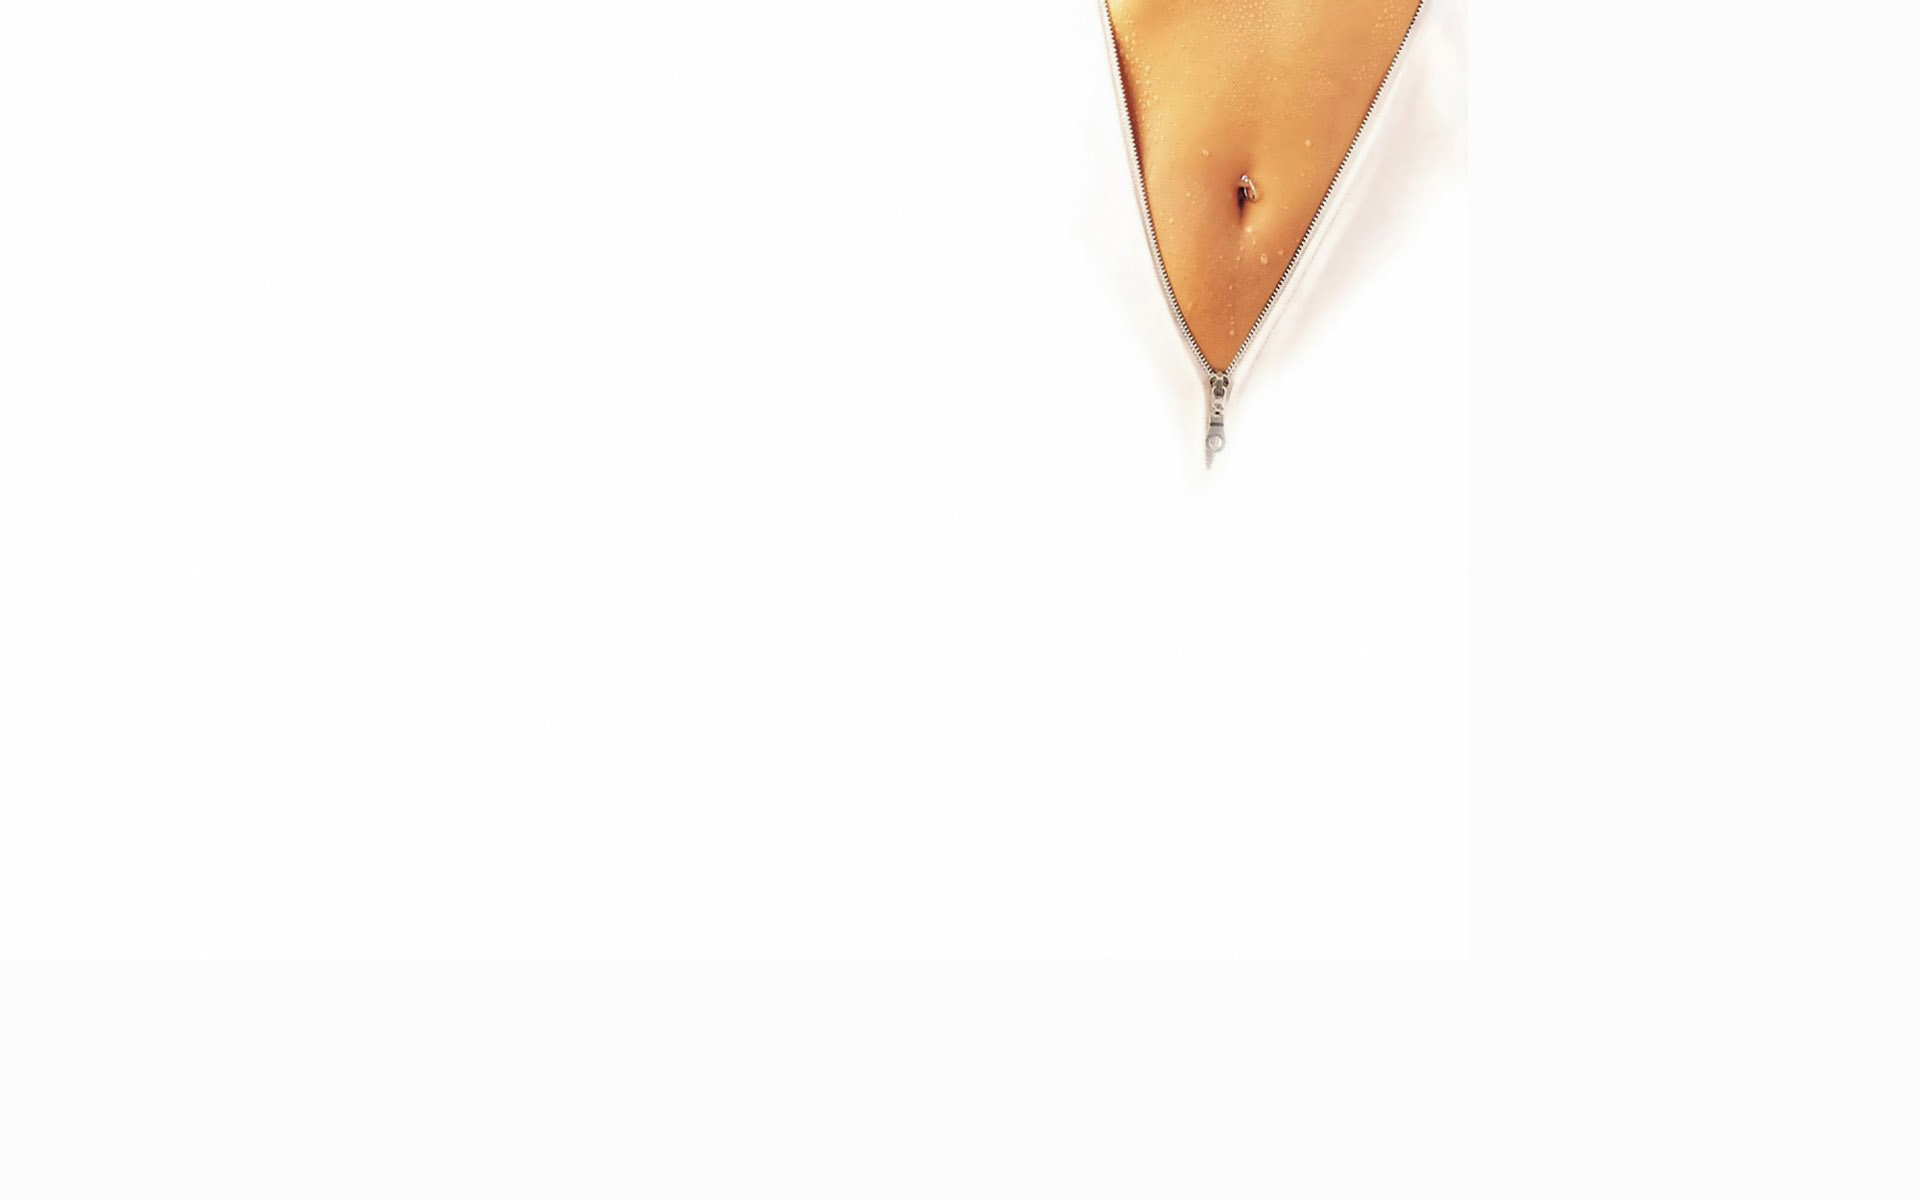 navel, pierced navel, zippers, white background - desktop wallpaper